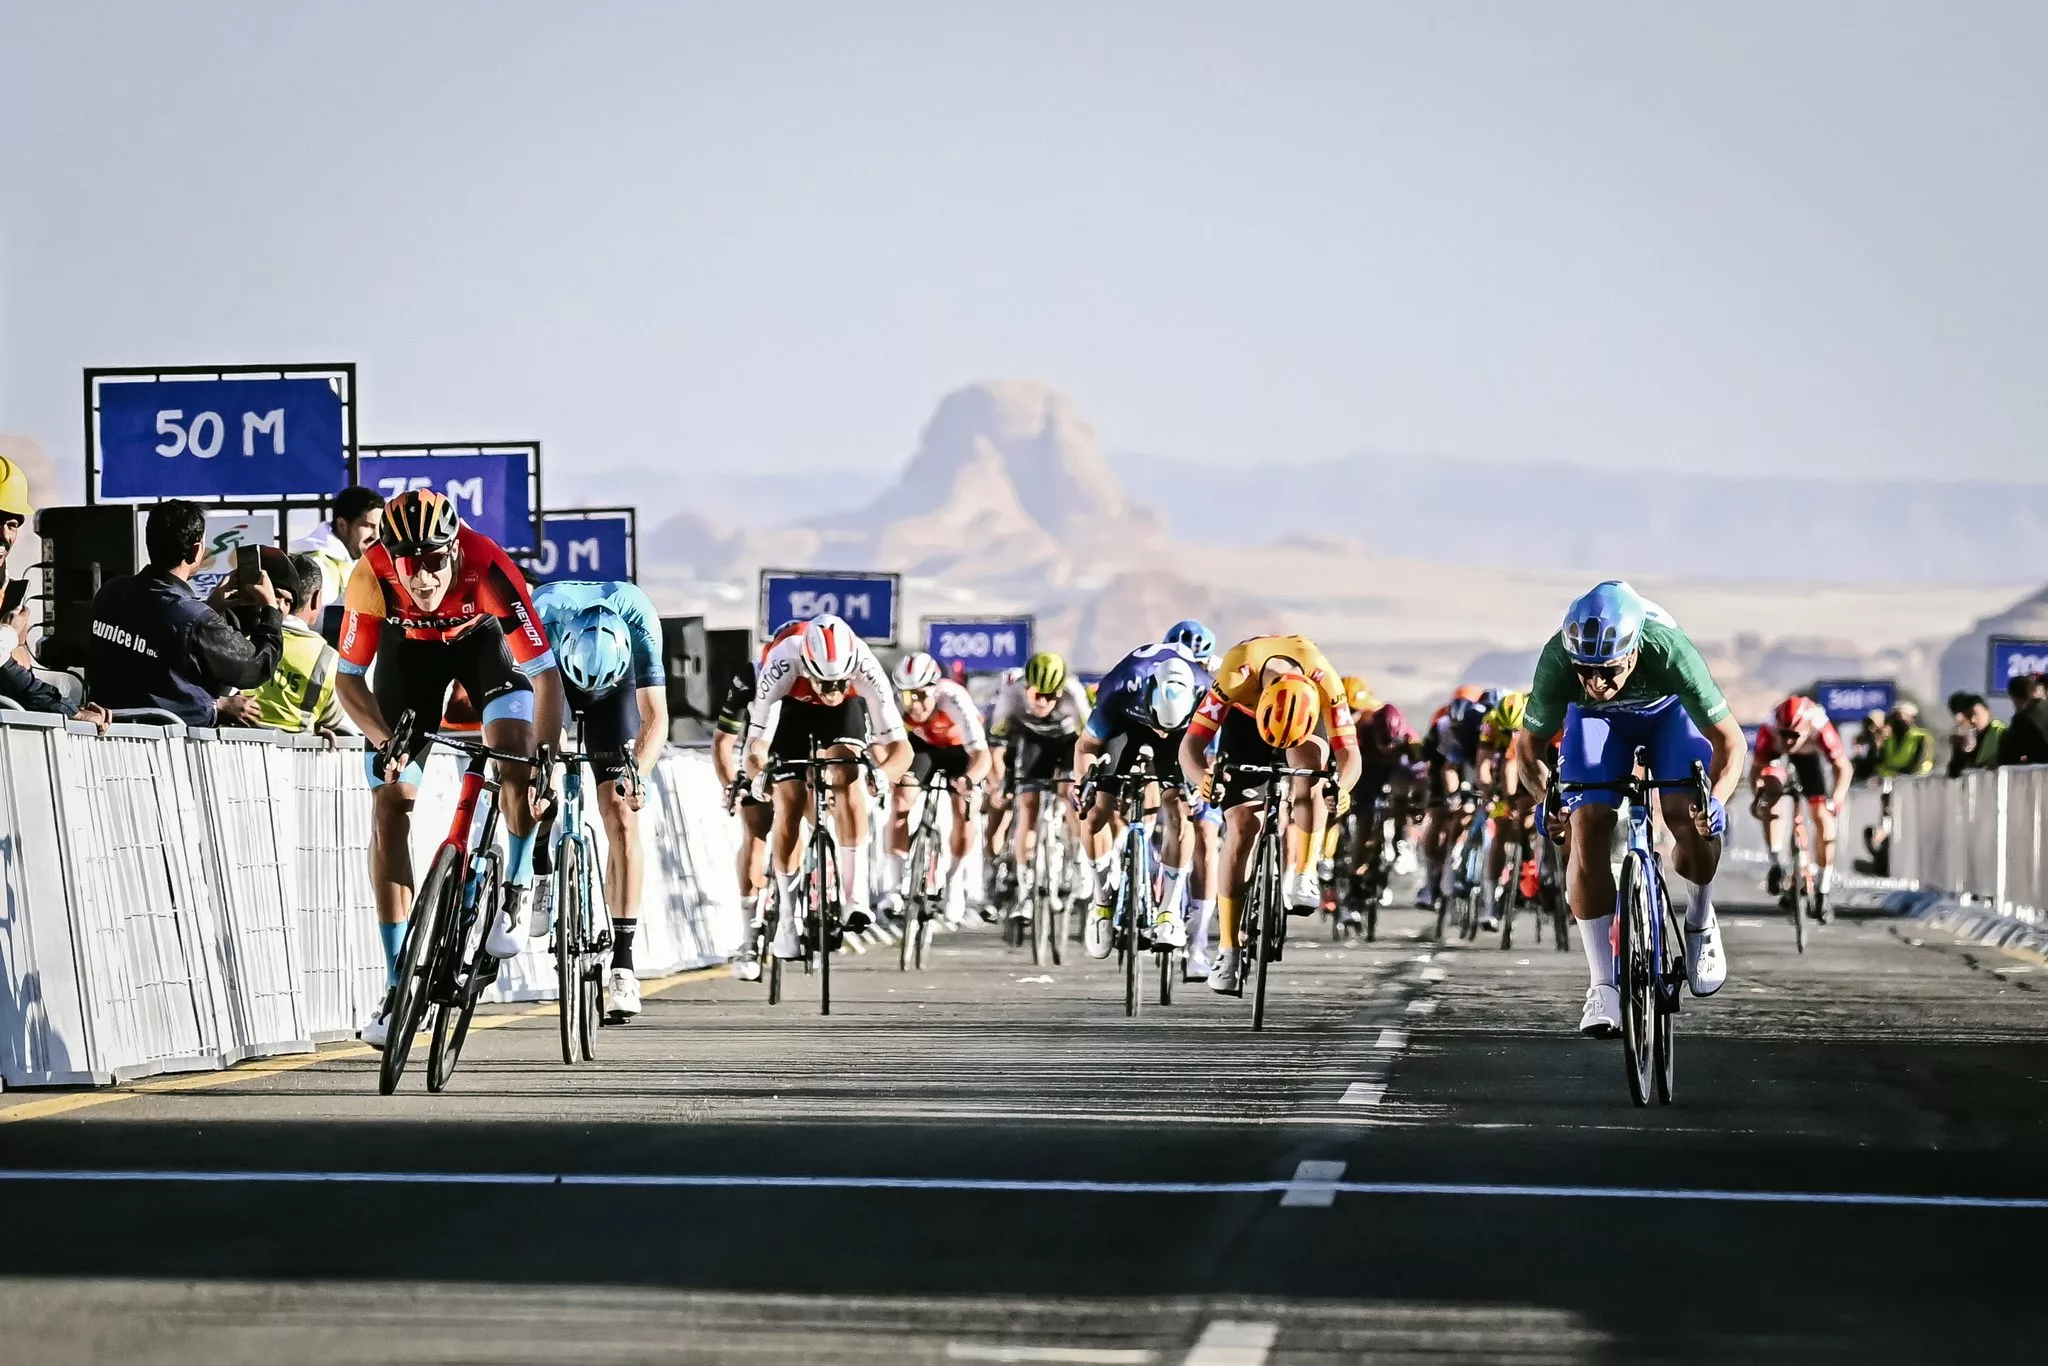 Джонатан Милан мощнейшим спринтом выиграл второй этап велогонки Saudi Tour